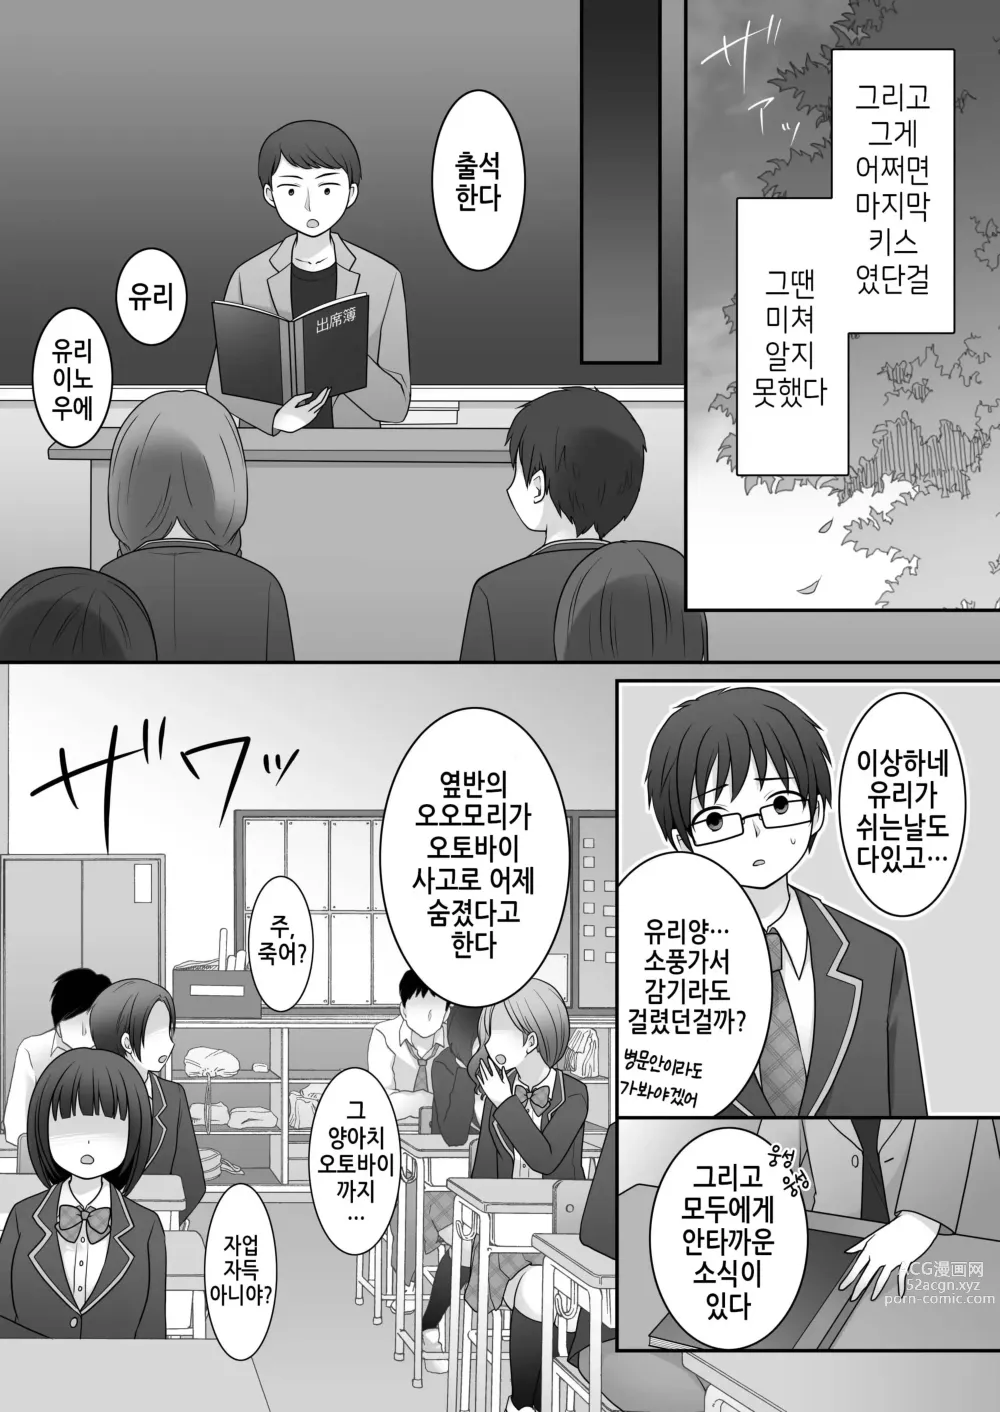 Page 5 of doujinshi 불량 in 그녀 내 여자친구의 몸뚱이는 불량남에게 납치되었다.